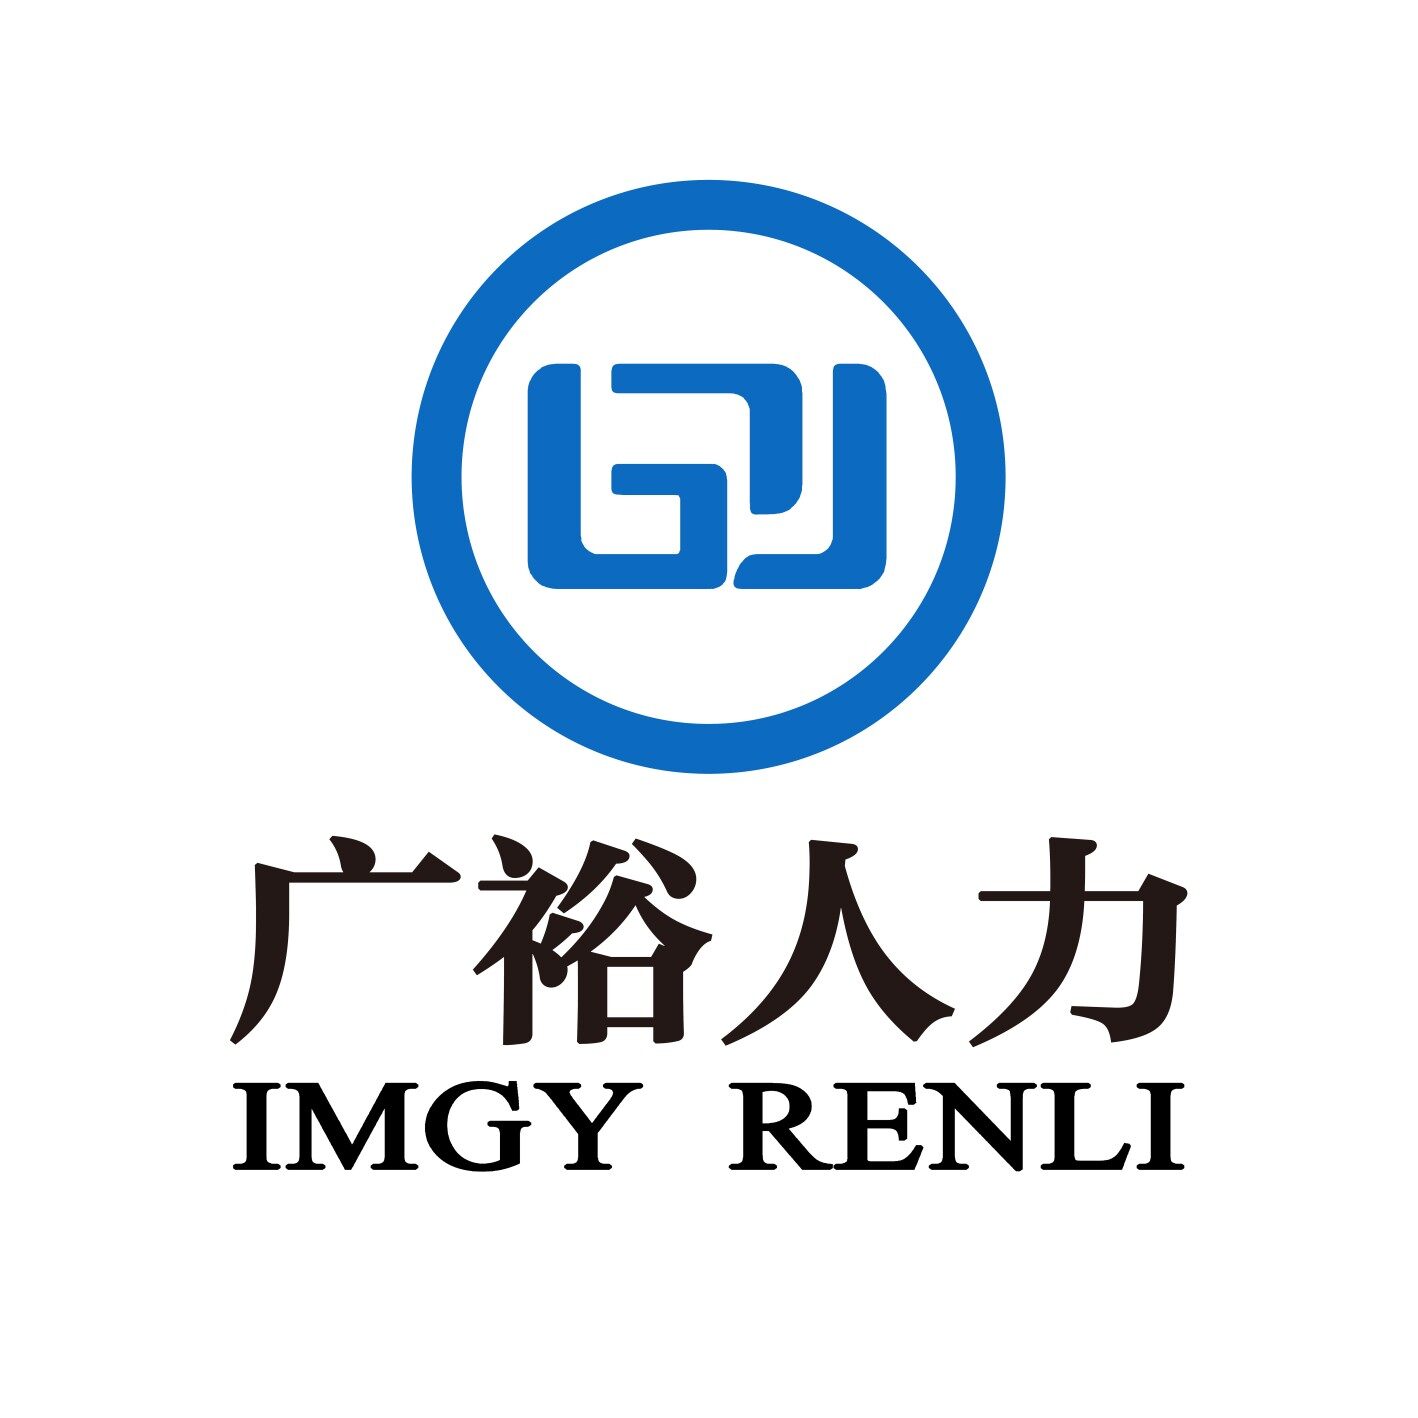 内蒙古人力资源有限公司logo